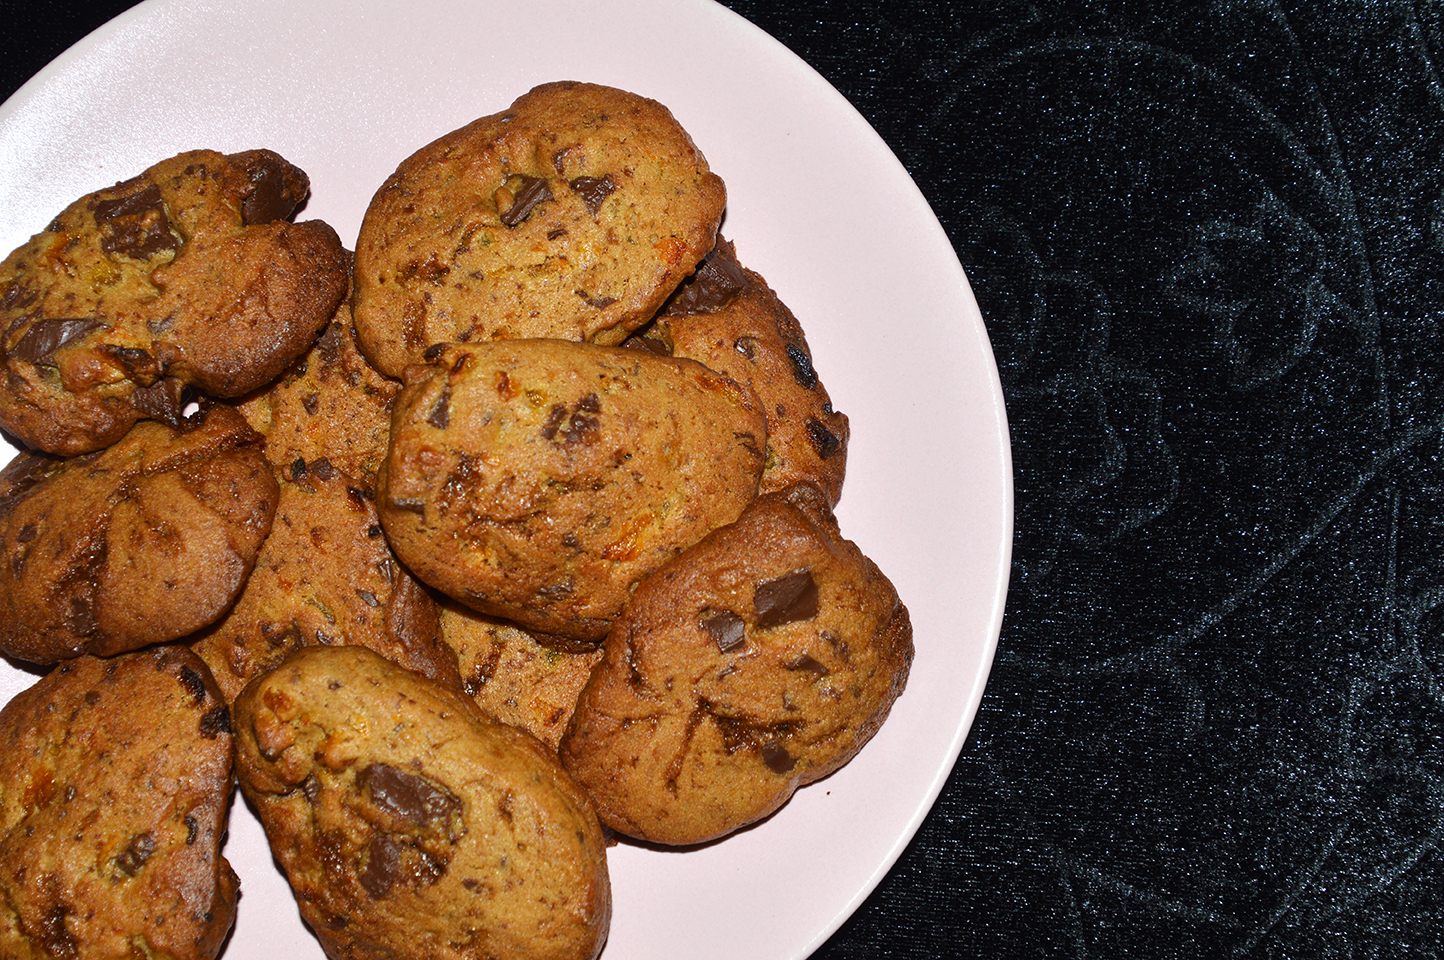 Chokolade cookie uden raffineret sukker og sødestoffer